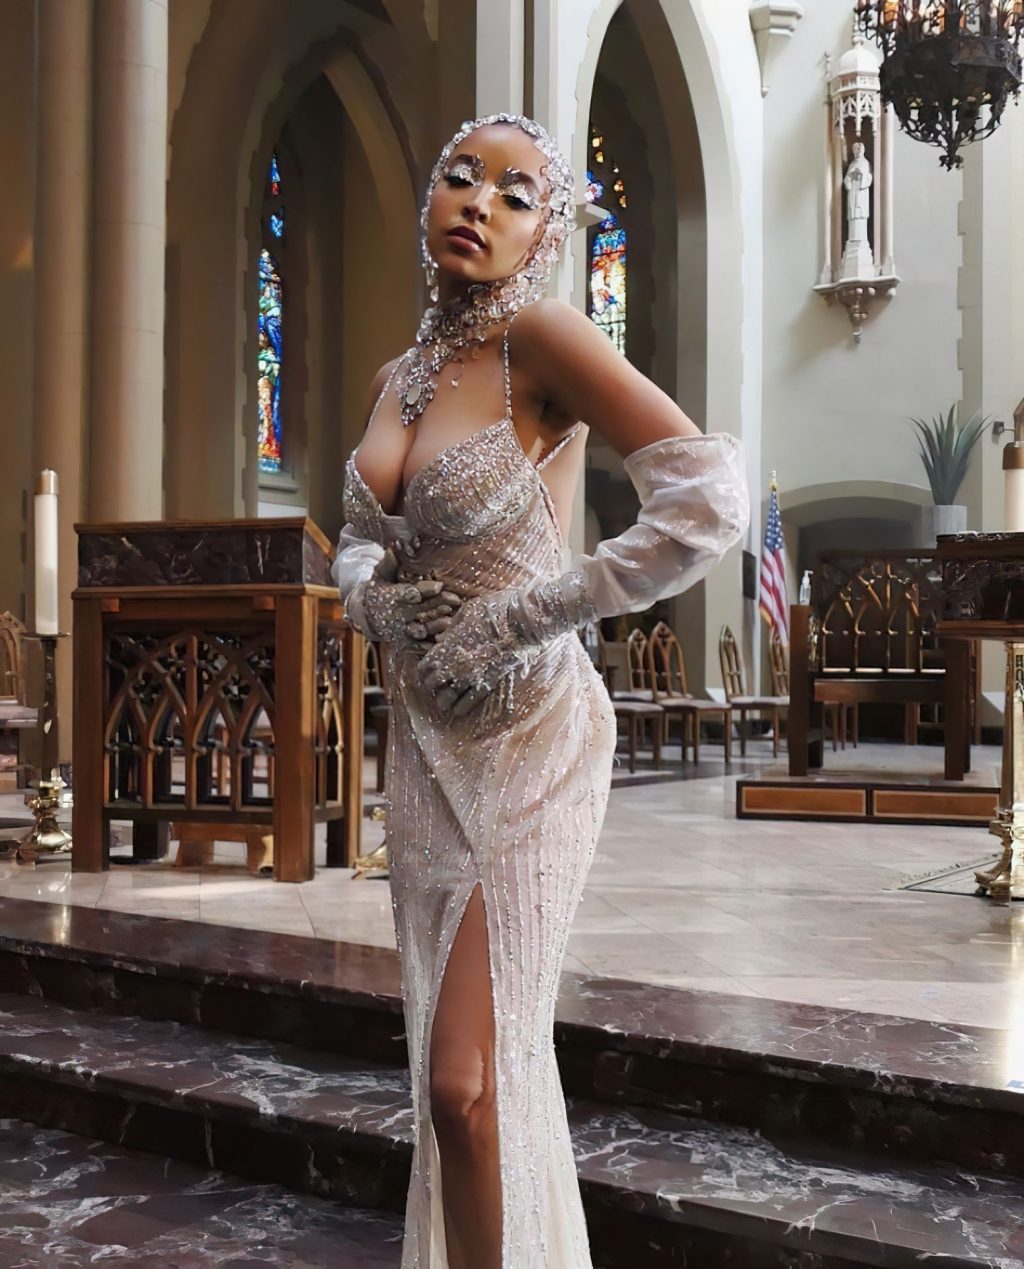 Tinashe Shows Off Her Boobs in Church (10 Photos)